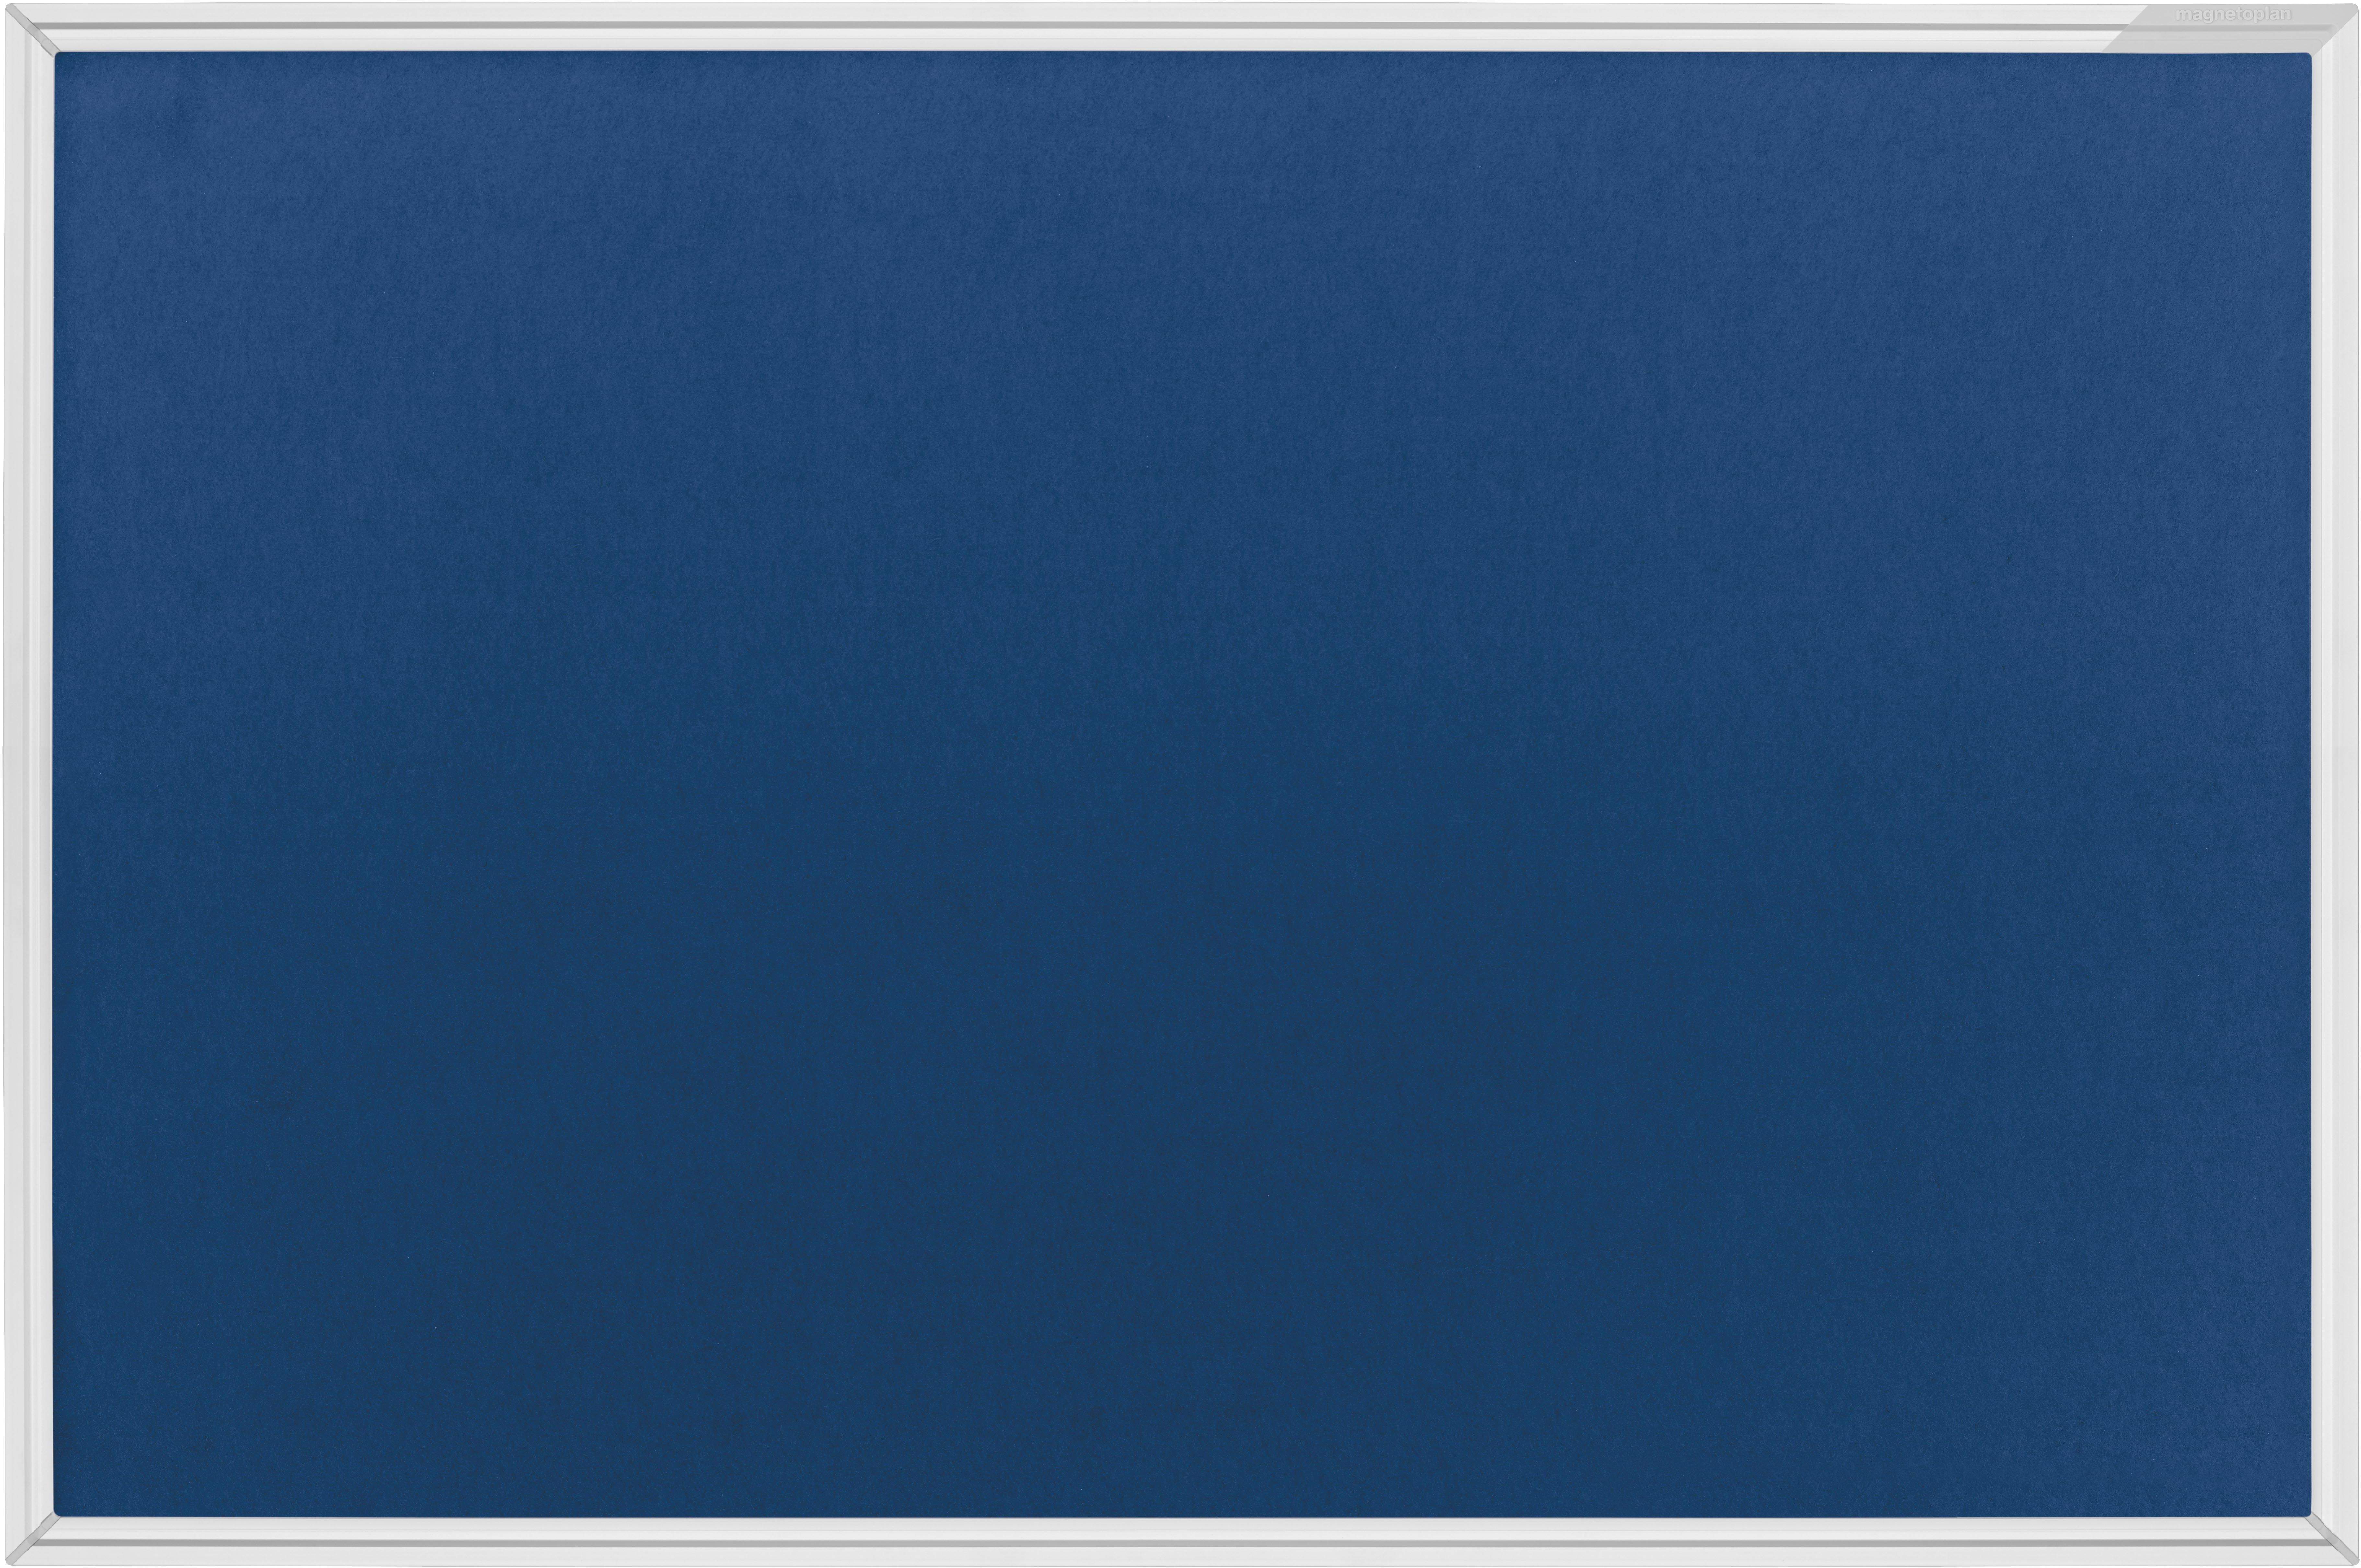 MAGNETOPLAN Design-Pinnboard SP 1412003 bleu, feutre 1200x900mm